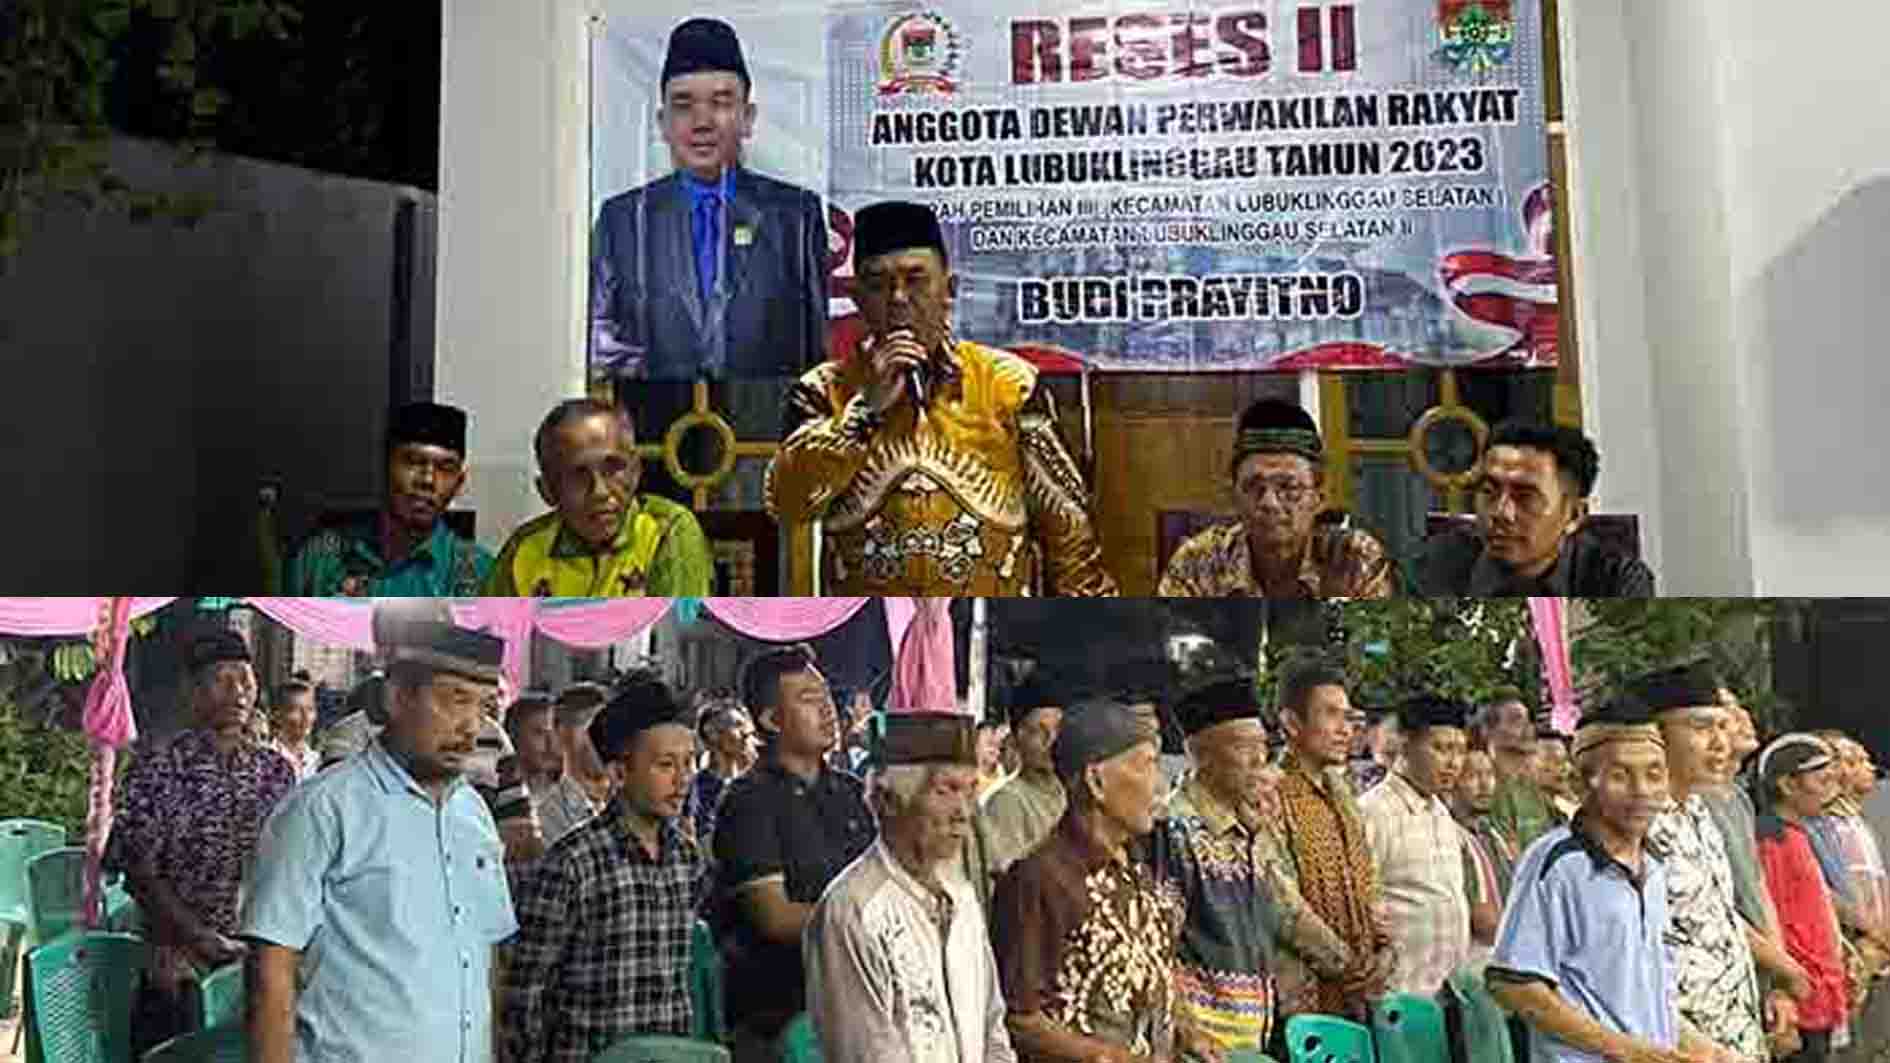 Reses II Anggota DPRD Kota Lubuklinggau Budi Prayitno Siap Perjuangkan Aspirasi Masyarakat